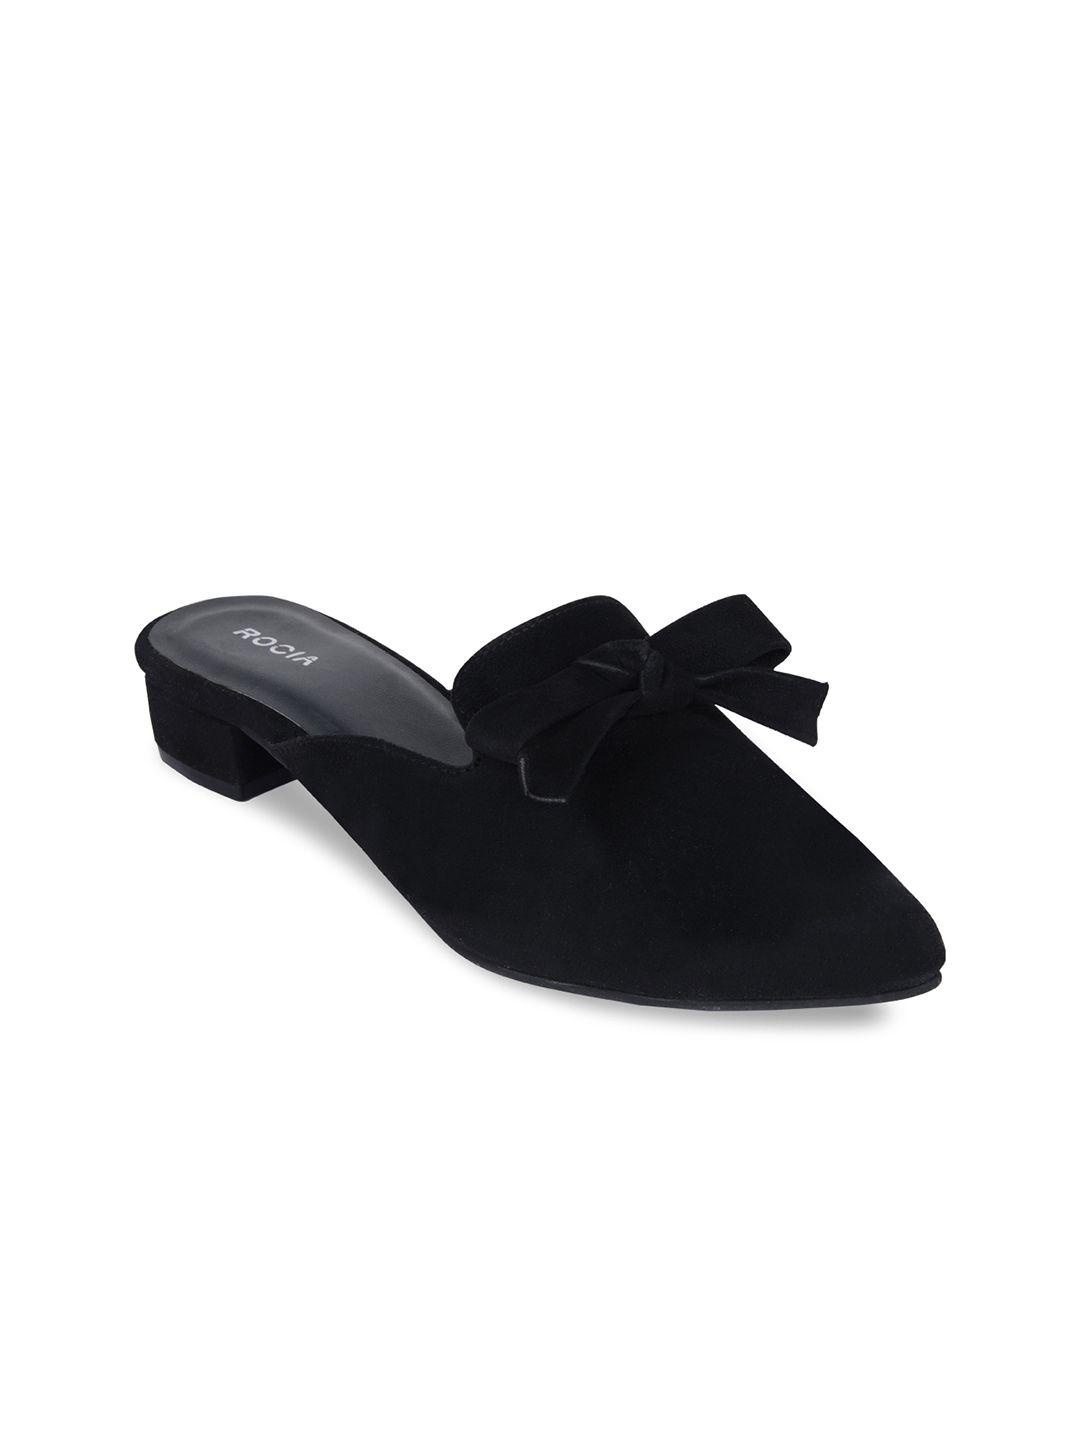 rocia black solid kitten heel sandals